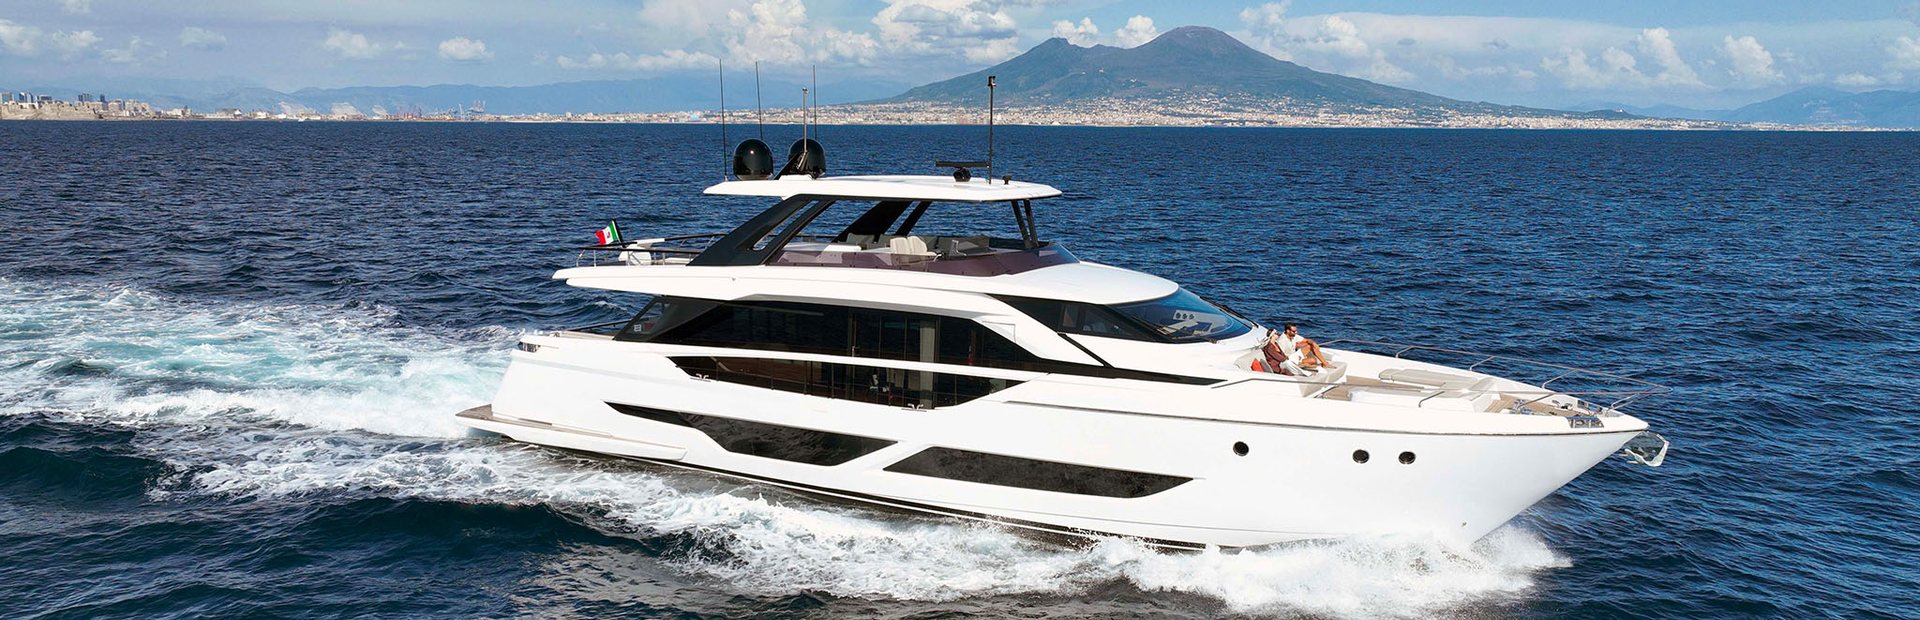 Ferretti 860 Yacht